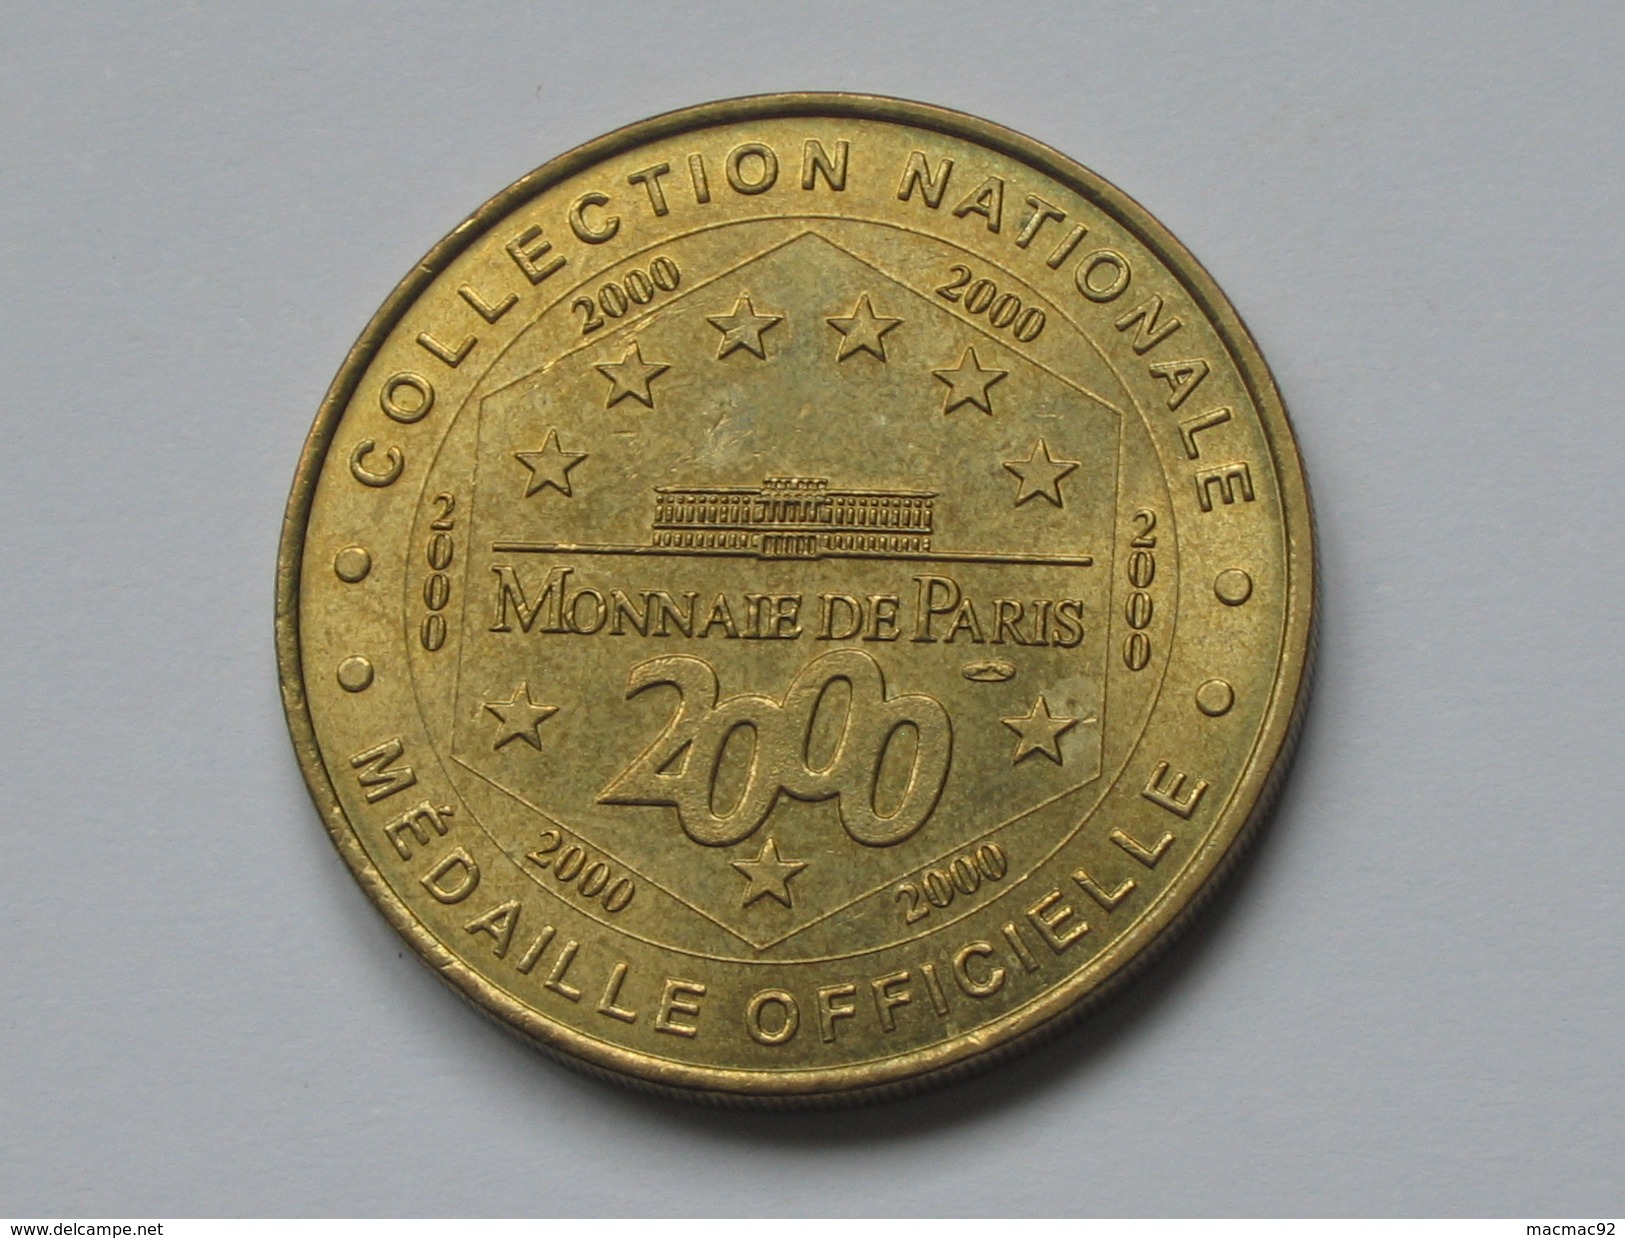 Monnaie De Paris - Basilique Du Sacré Coeur - Montmartre 2000   **** EN ACHAT IMMEDIAT  **** - 2000